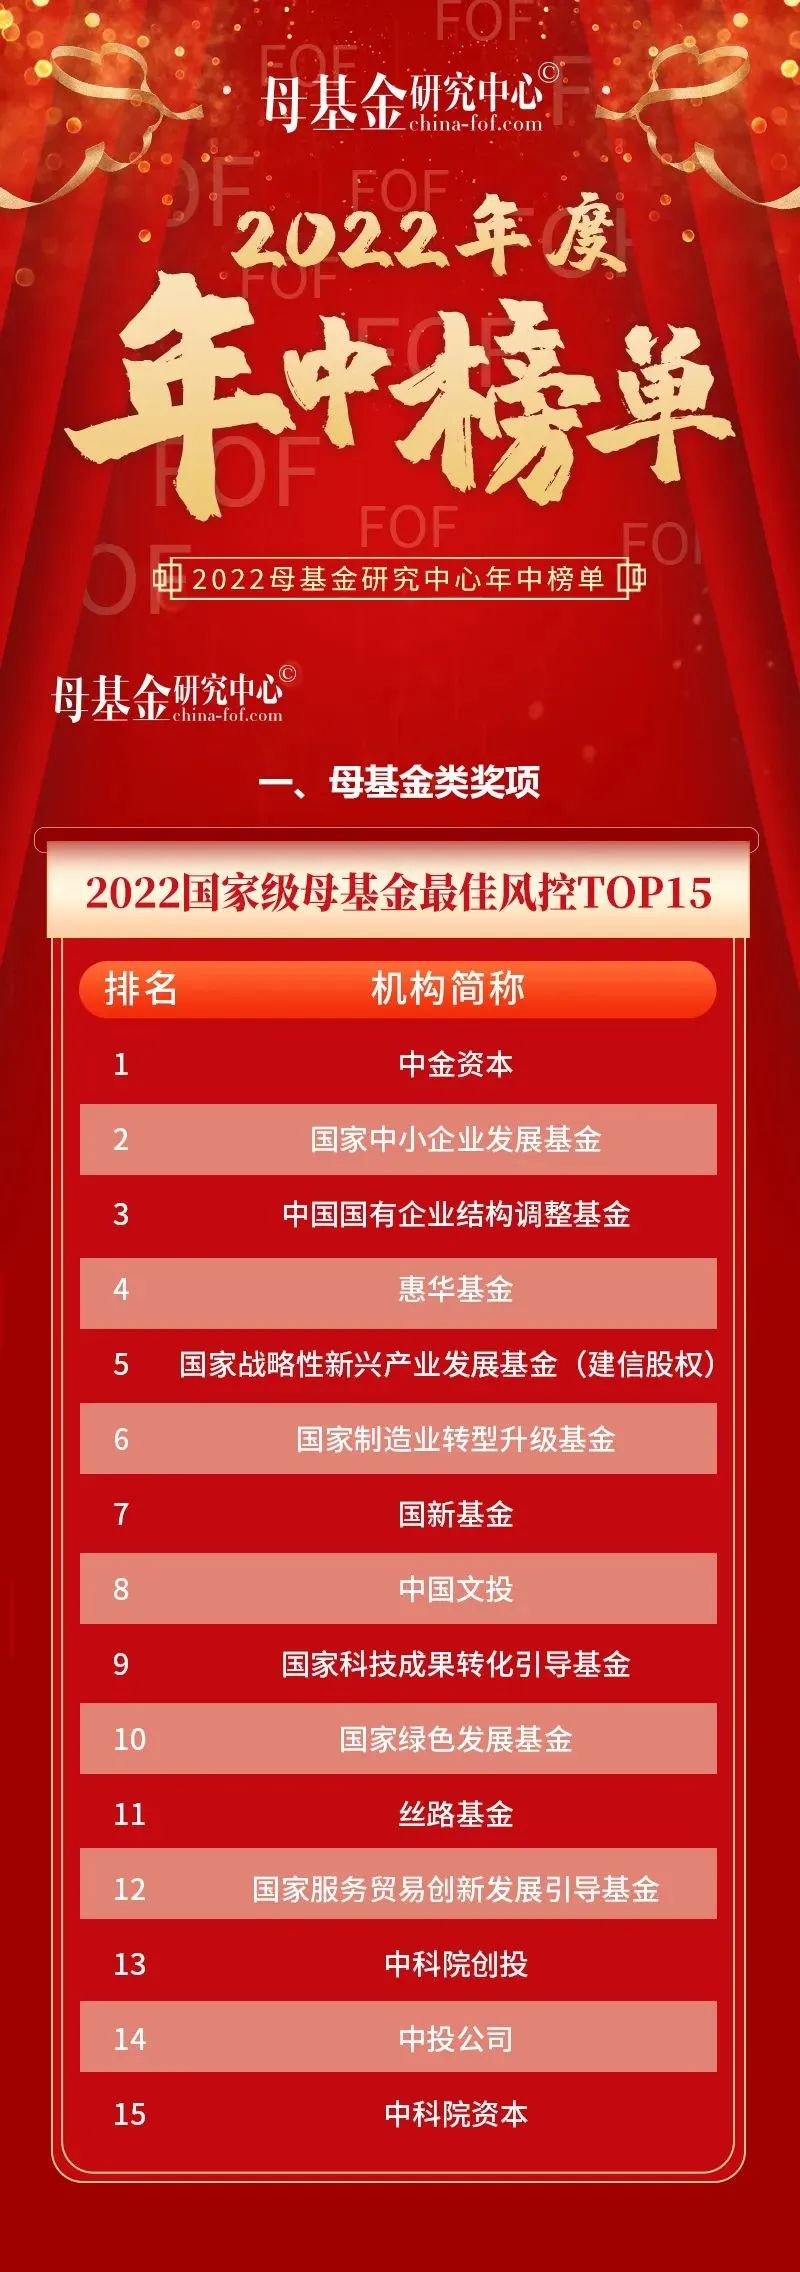 长江产业基金荣获母基金研究中心“2022省级政府引导基金最佳风控TOP30”第七名